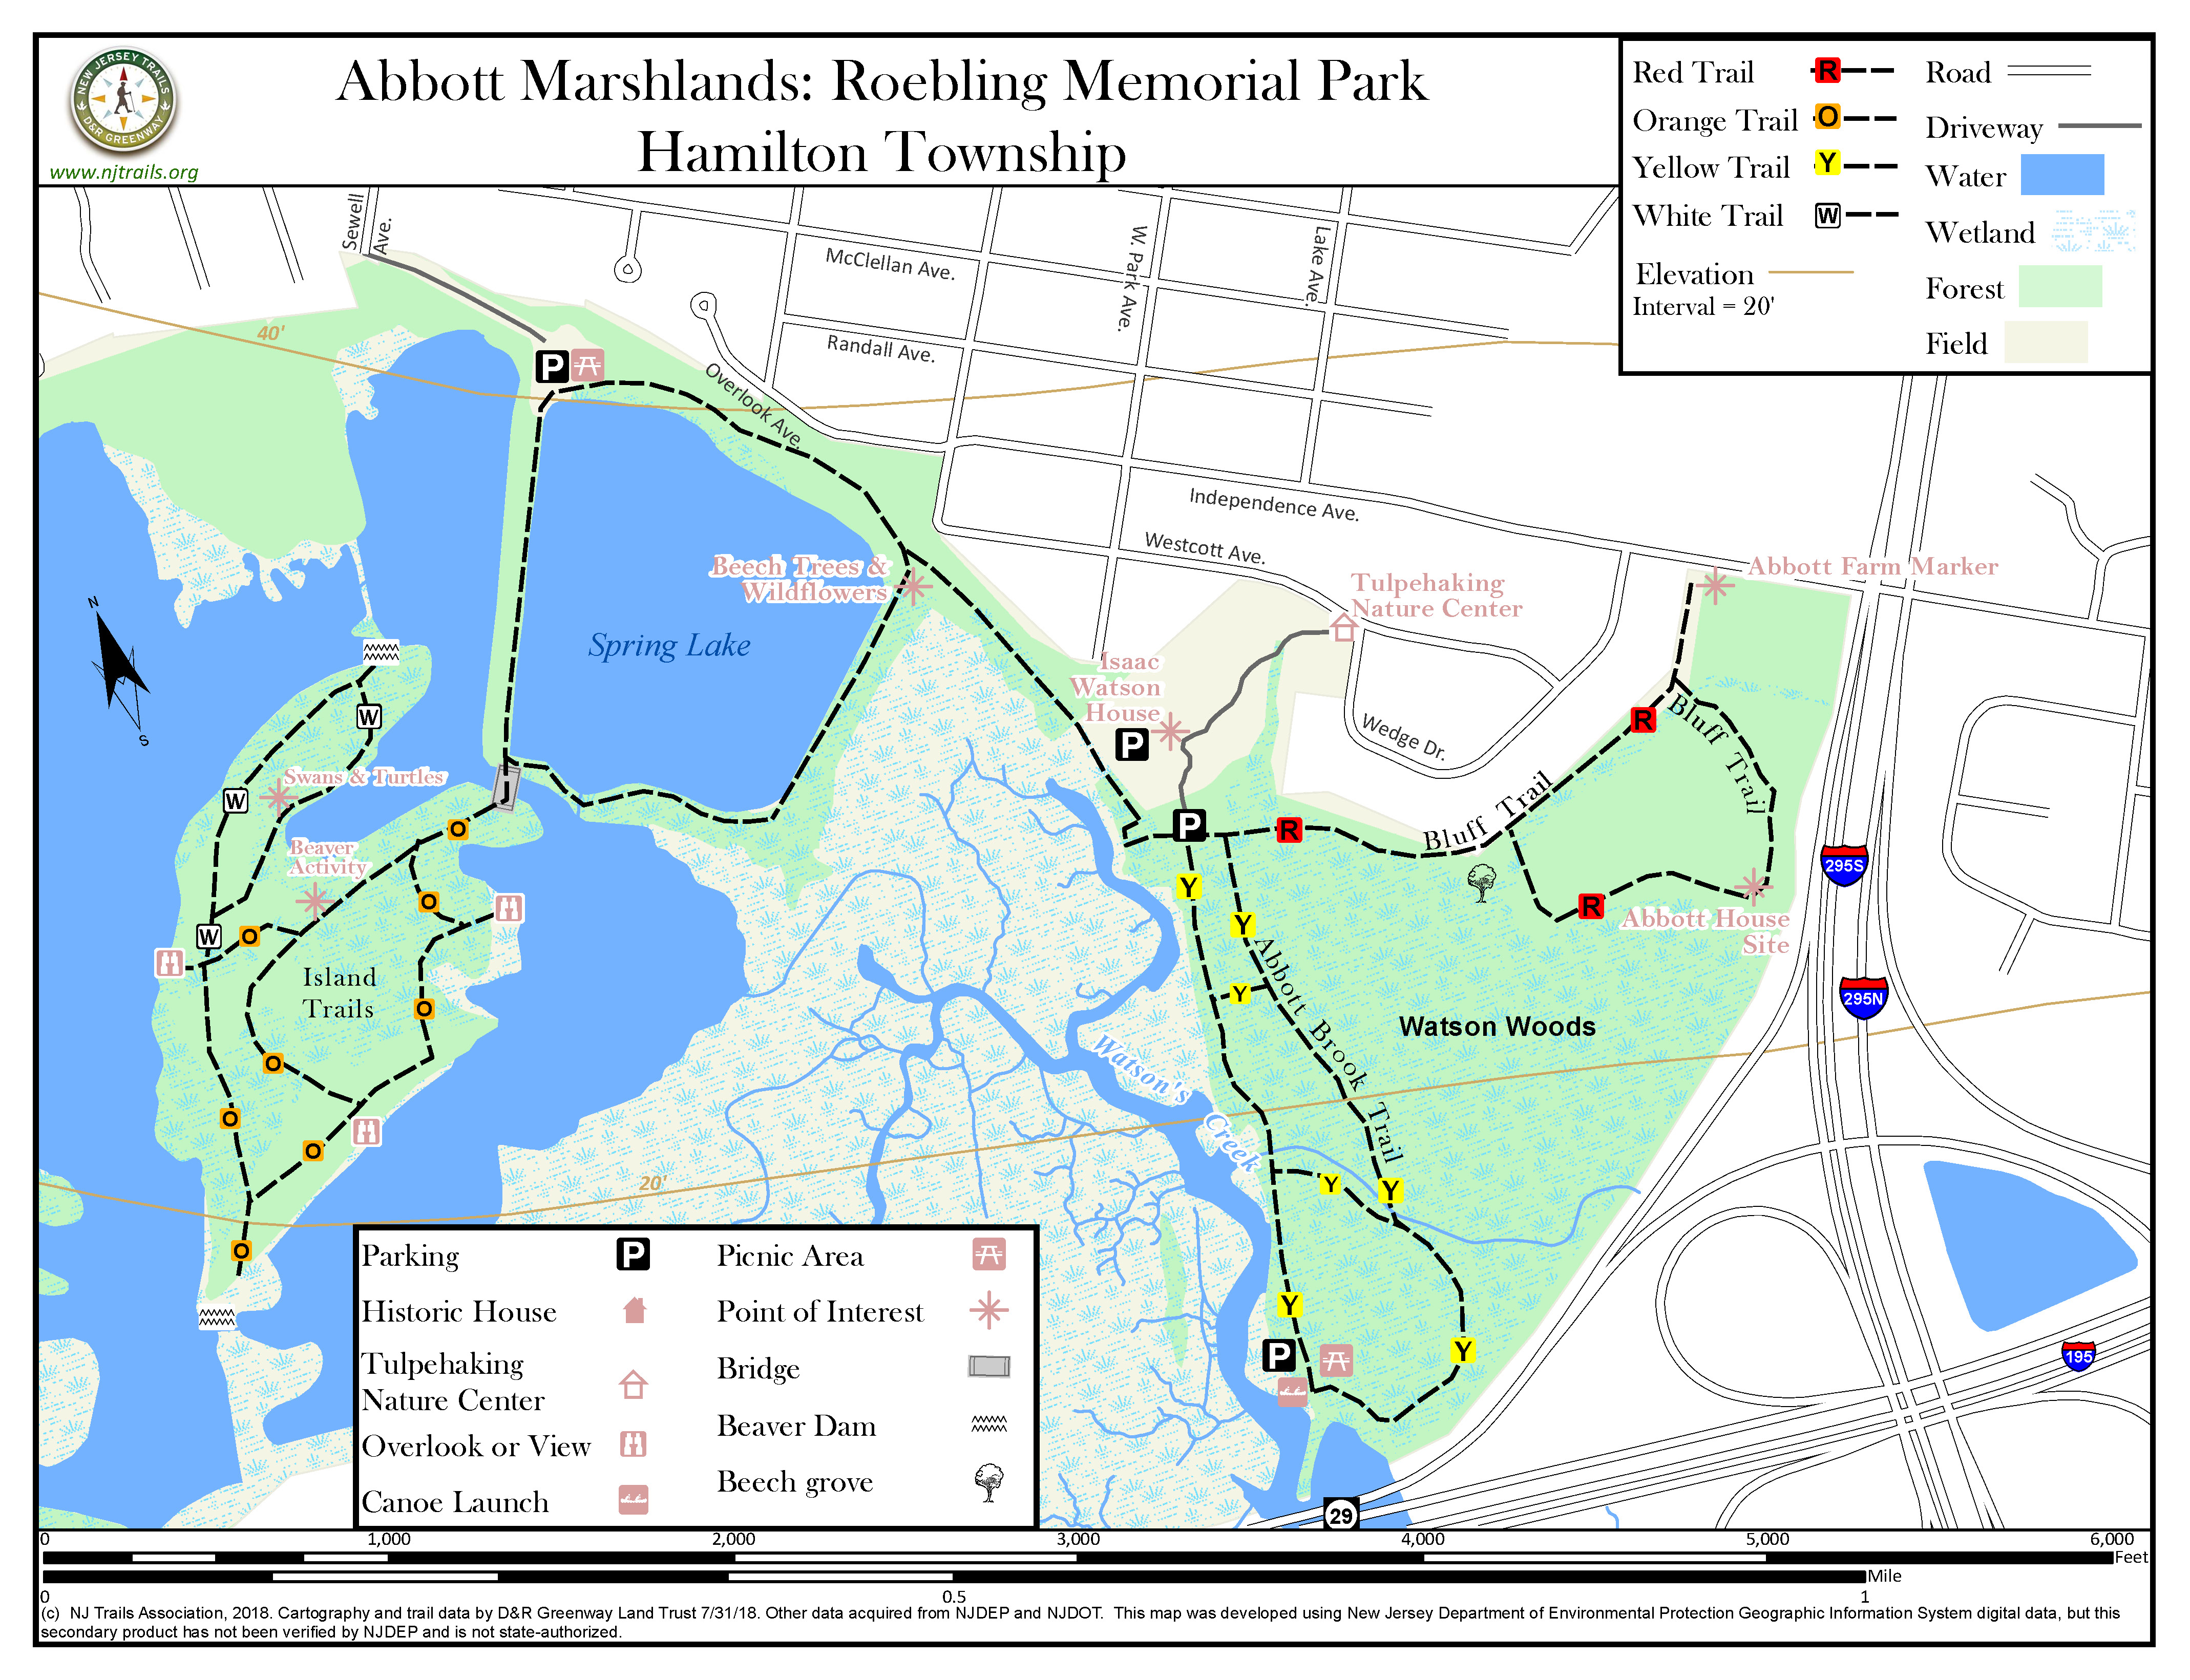 Abbott Marshlands: Roebling Memorial Park